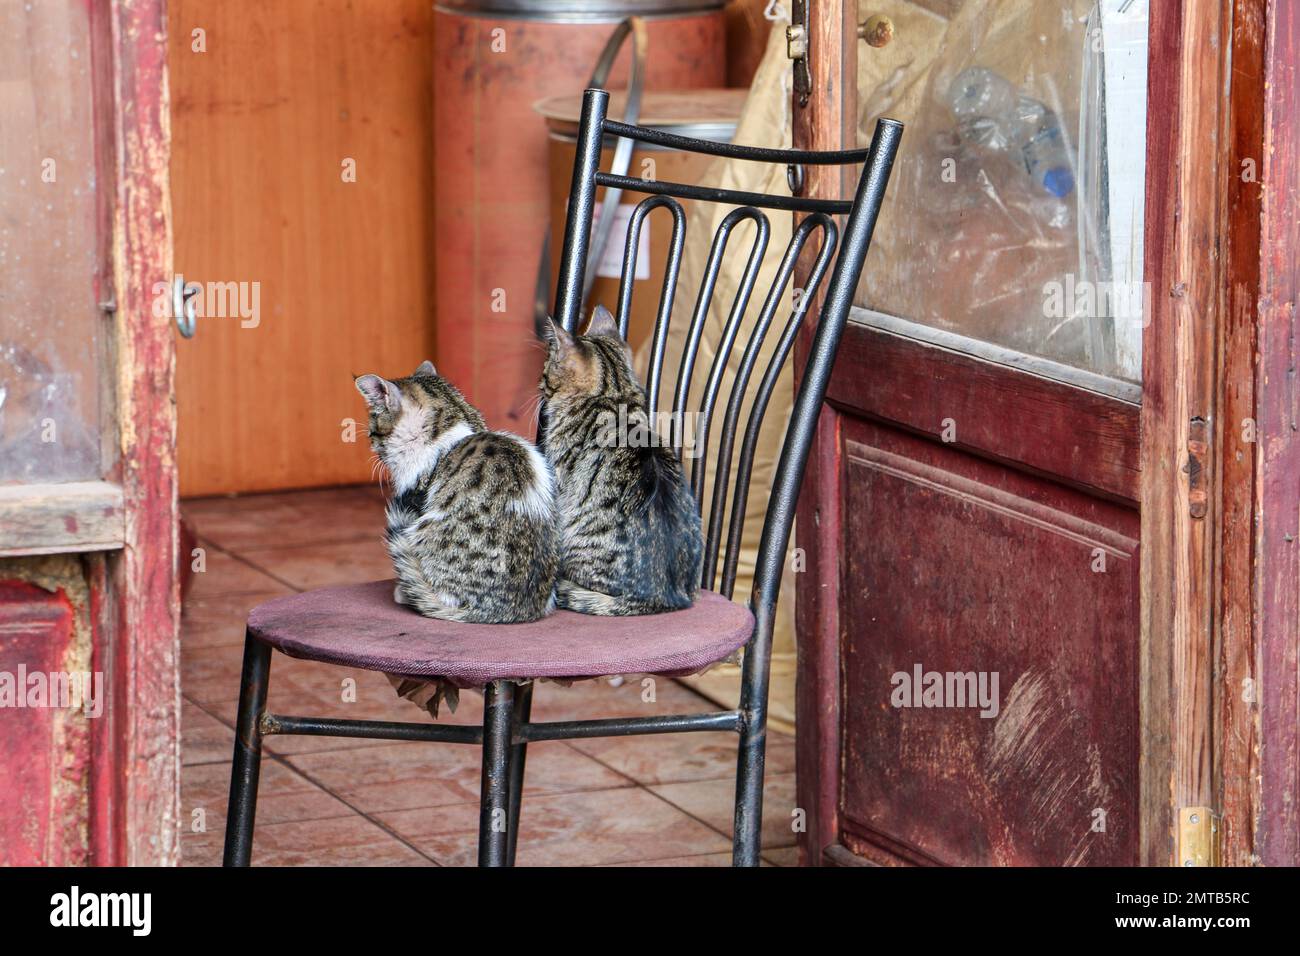 Gatos, dos pequeños gatos sentados en la silla. Muebles viejos y tienda vieja. Enfoque selectivo en los gatitos. Divertido concepto de animal e idea. Foto de stock